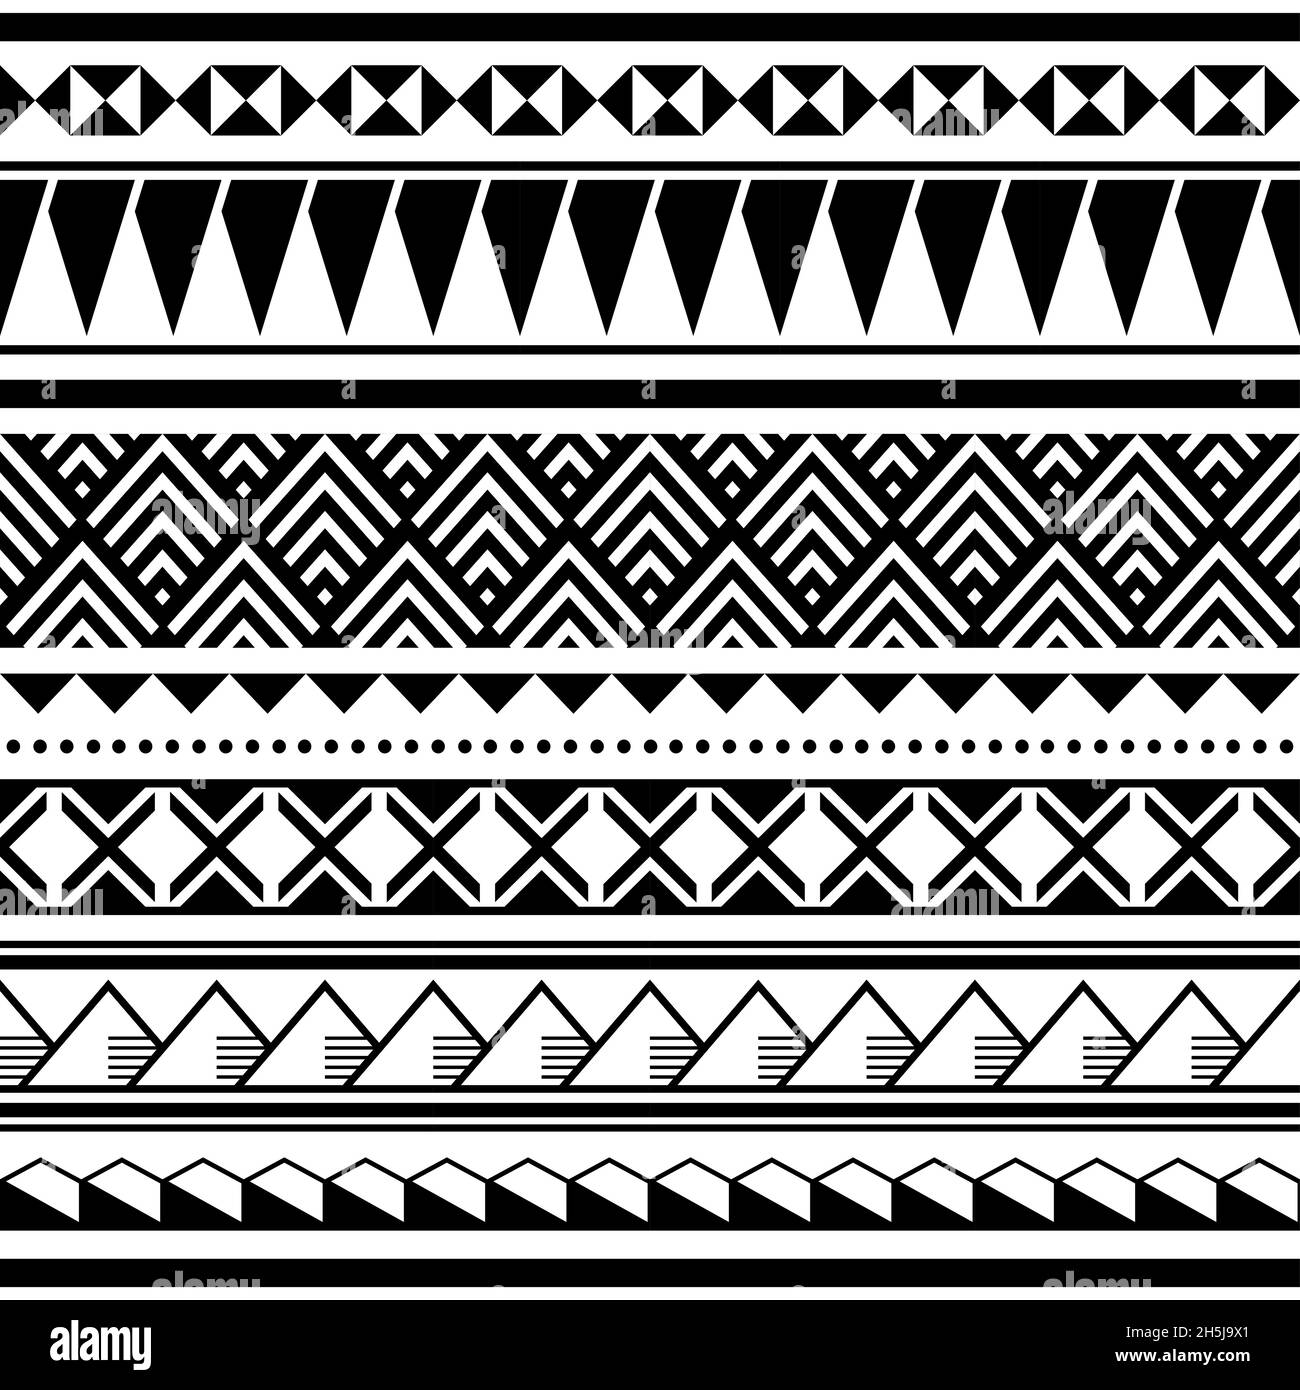 Motivo vettoriale tribale senza cuciture hawaiano, stampa in tessuto o tessuto in bianco e nero ispirata all'arte tatoo della Polinesia Illustrazione Vettoriale